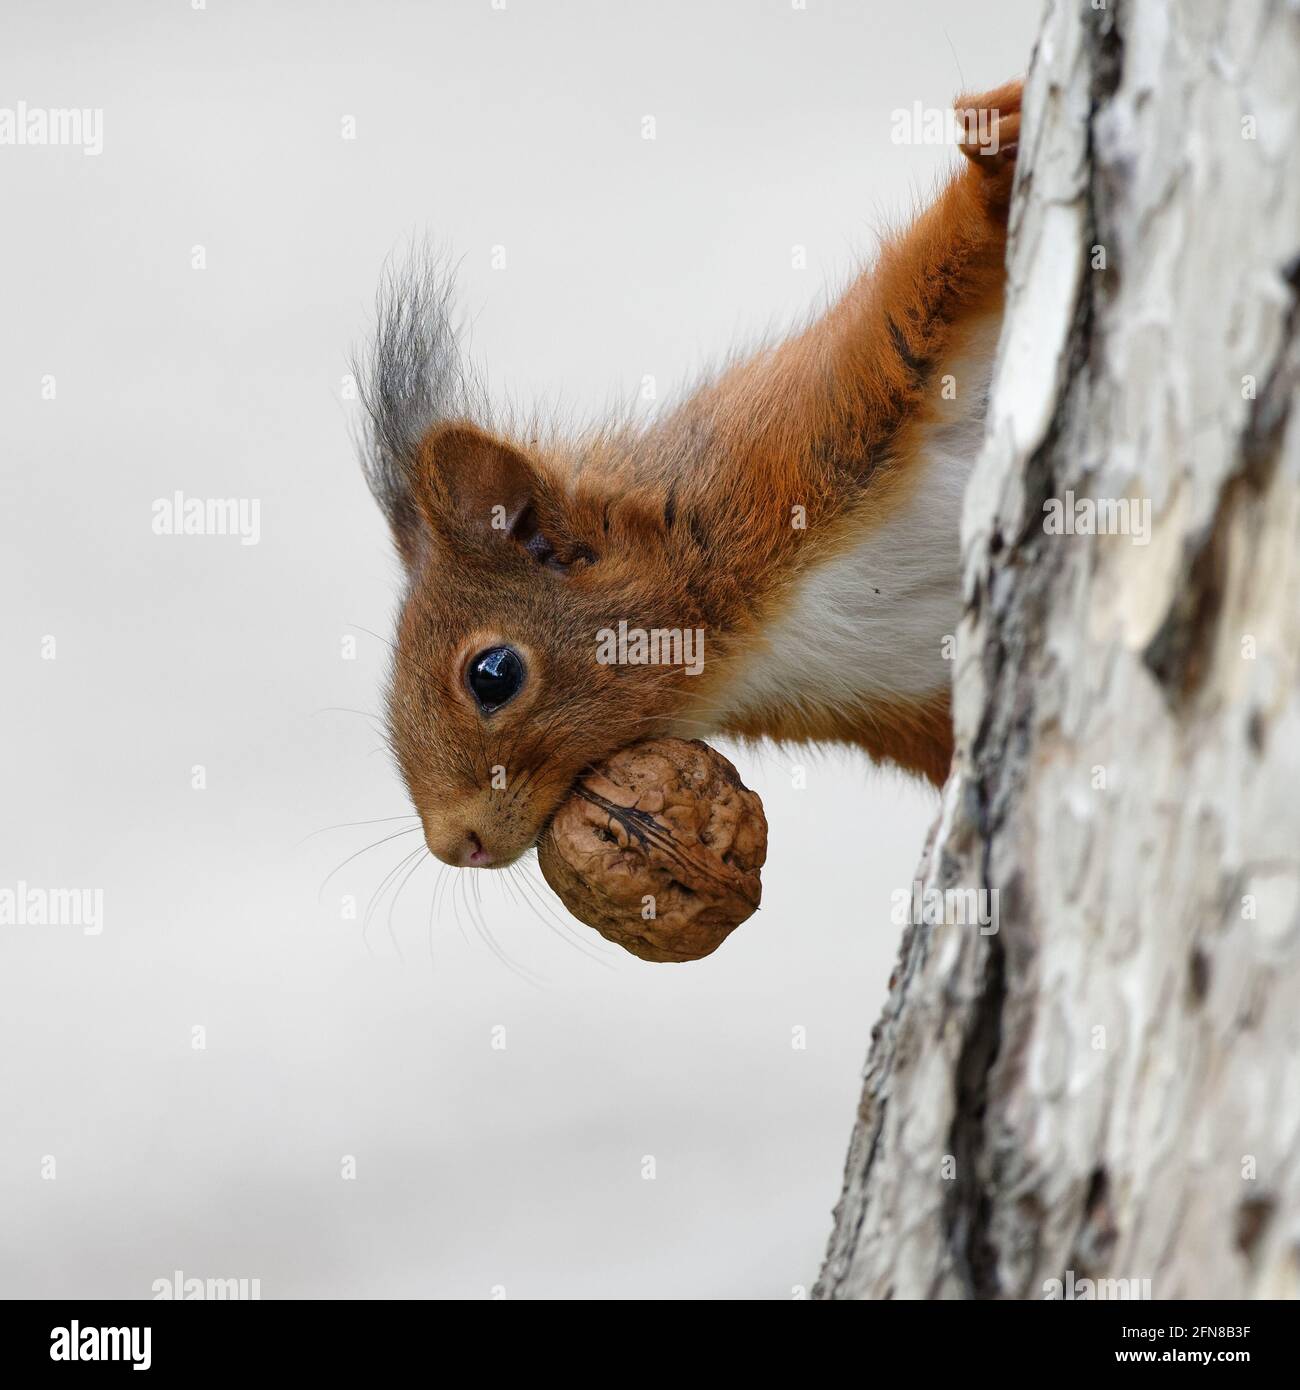 excited squirrel